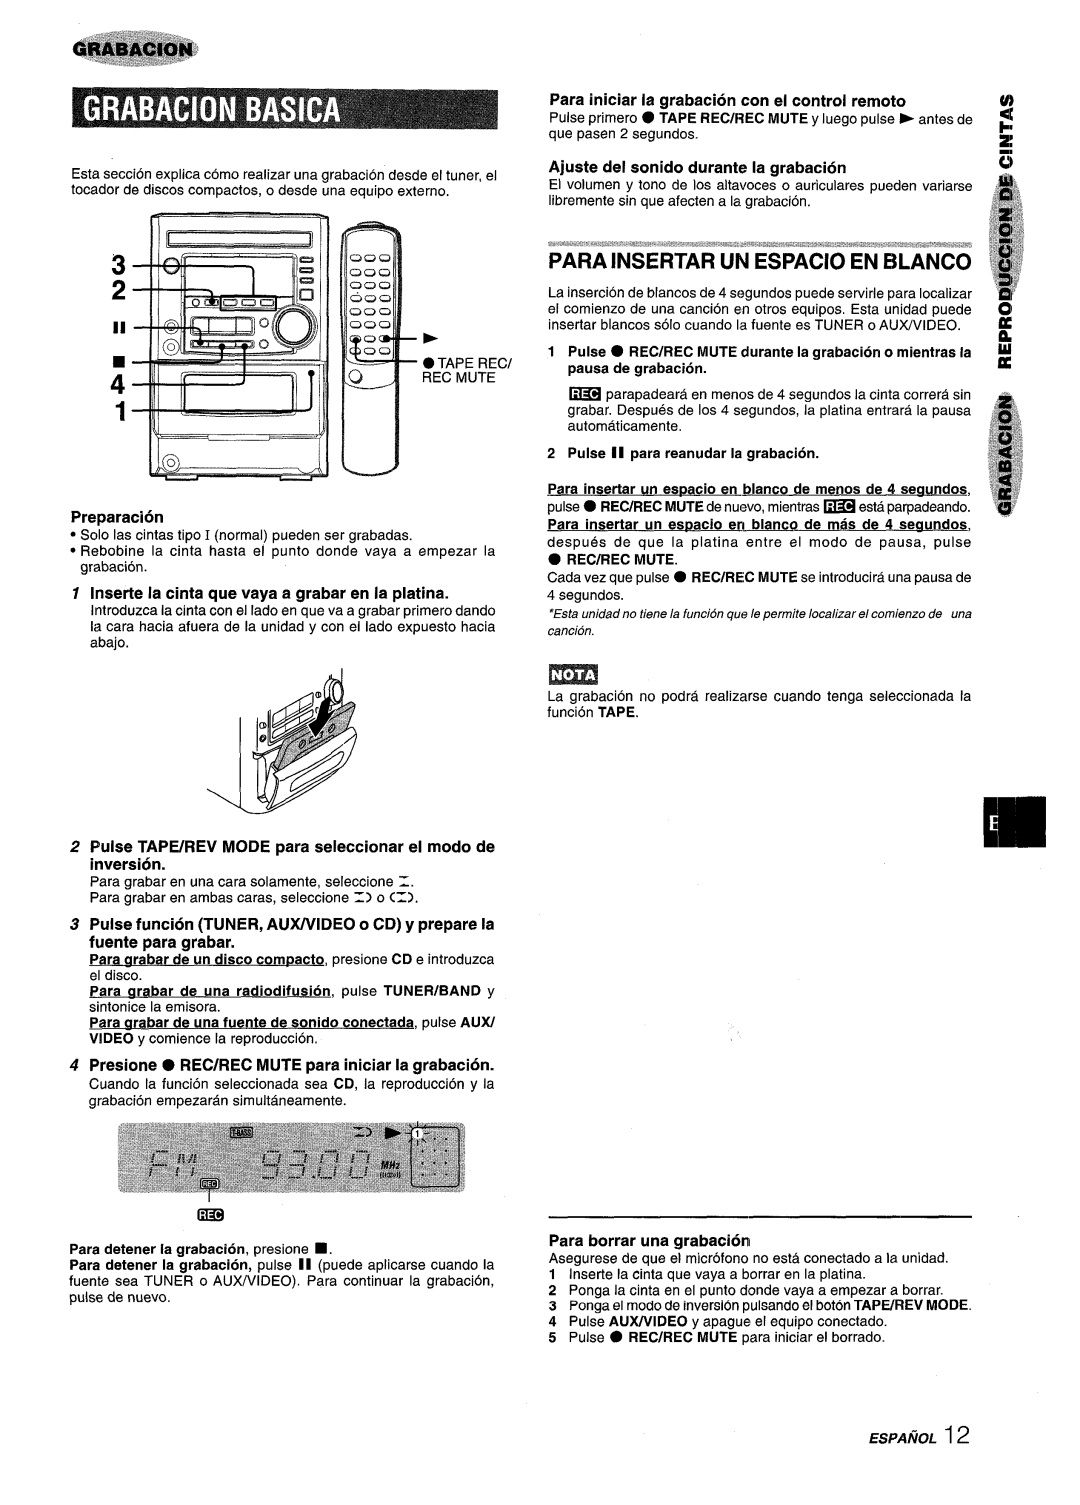 Aiwa XM-M25 manual Para iniciar la grabacion con ei control remoto, Ajuste del sonido durante la grabacion, Preparaci6n 